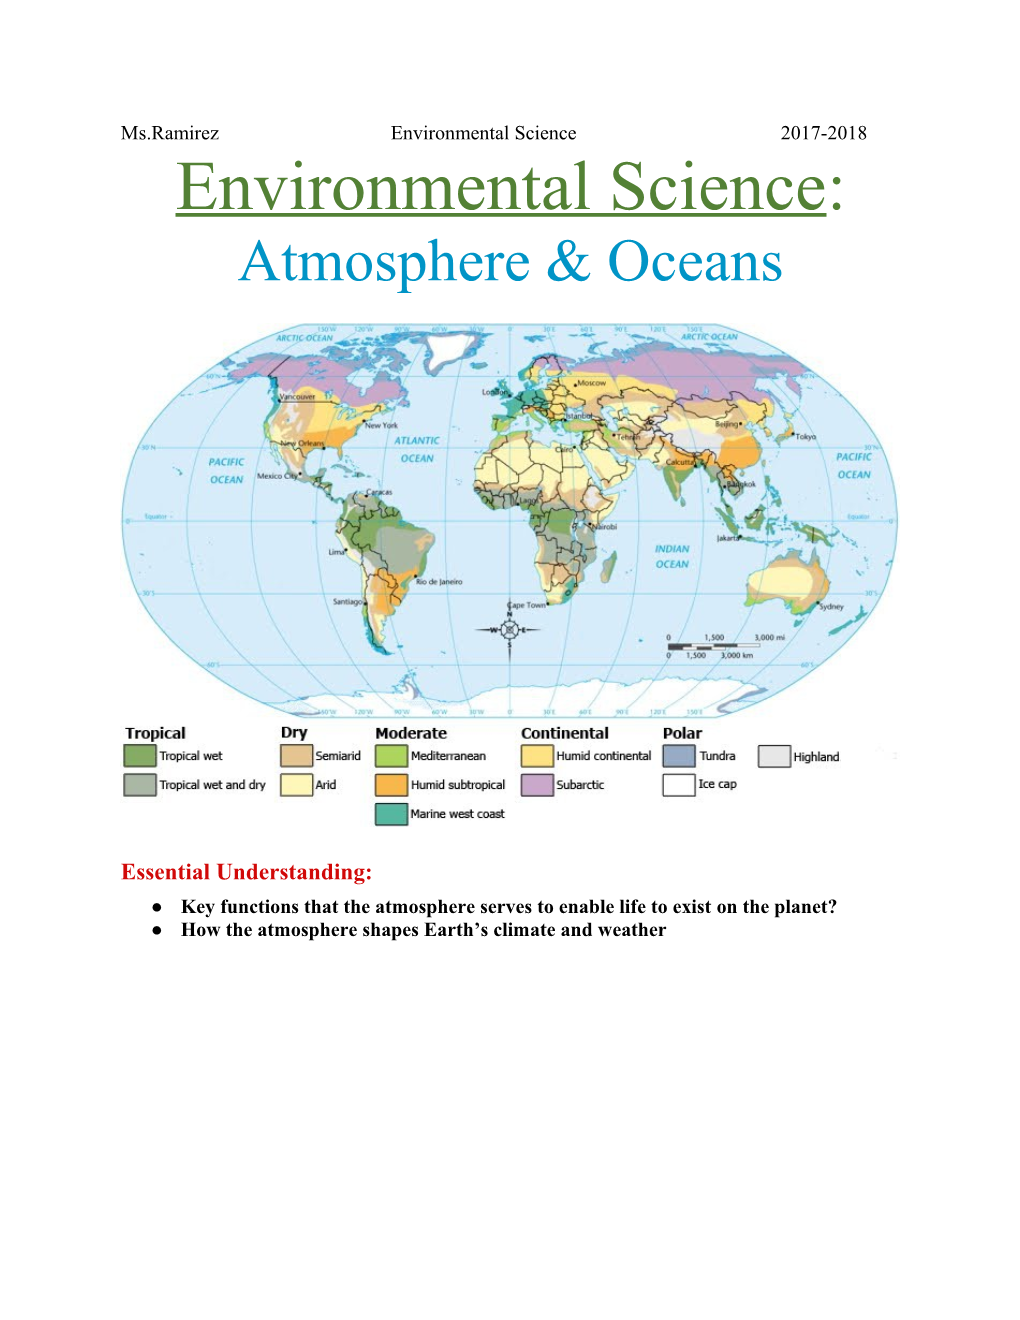 Environmental Science: Atmosphere & Oceans